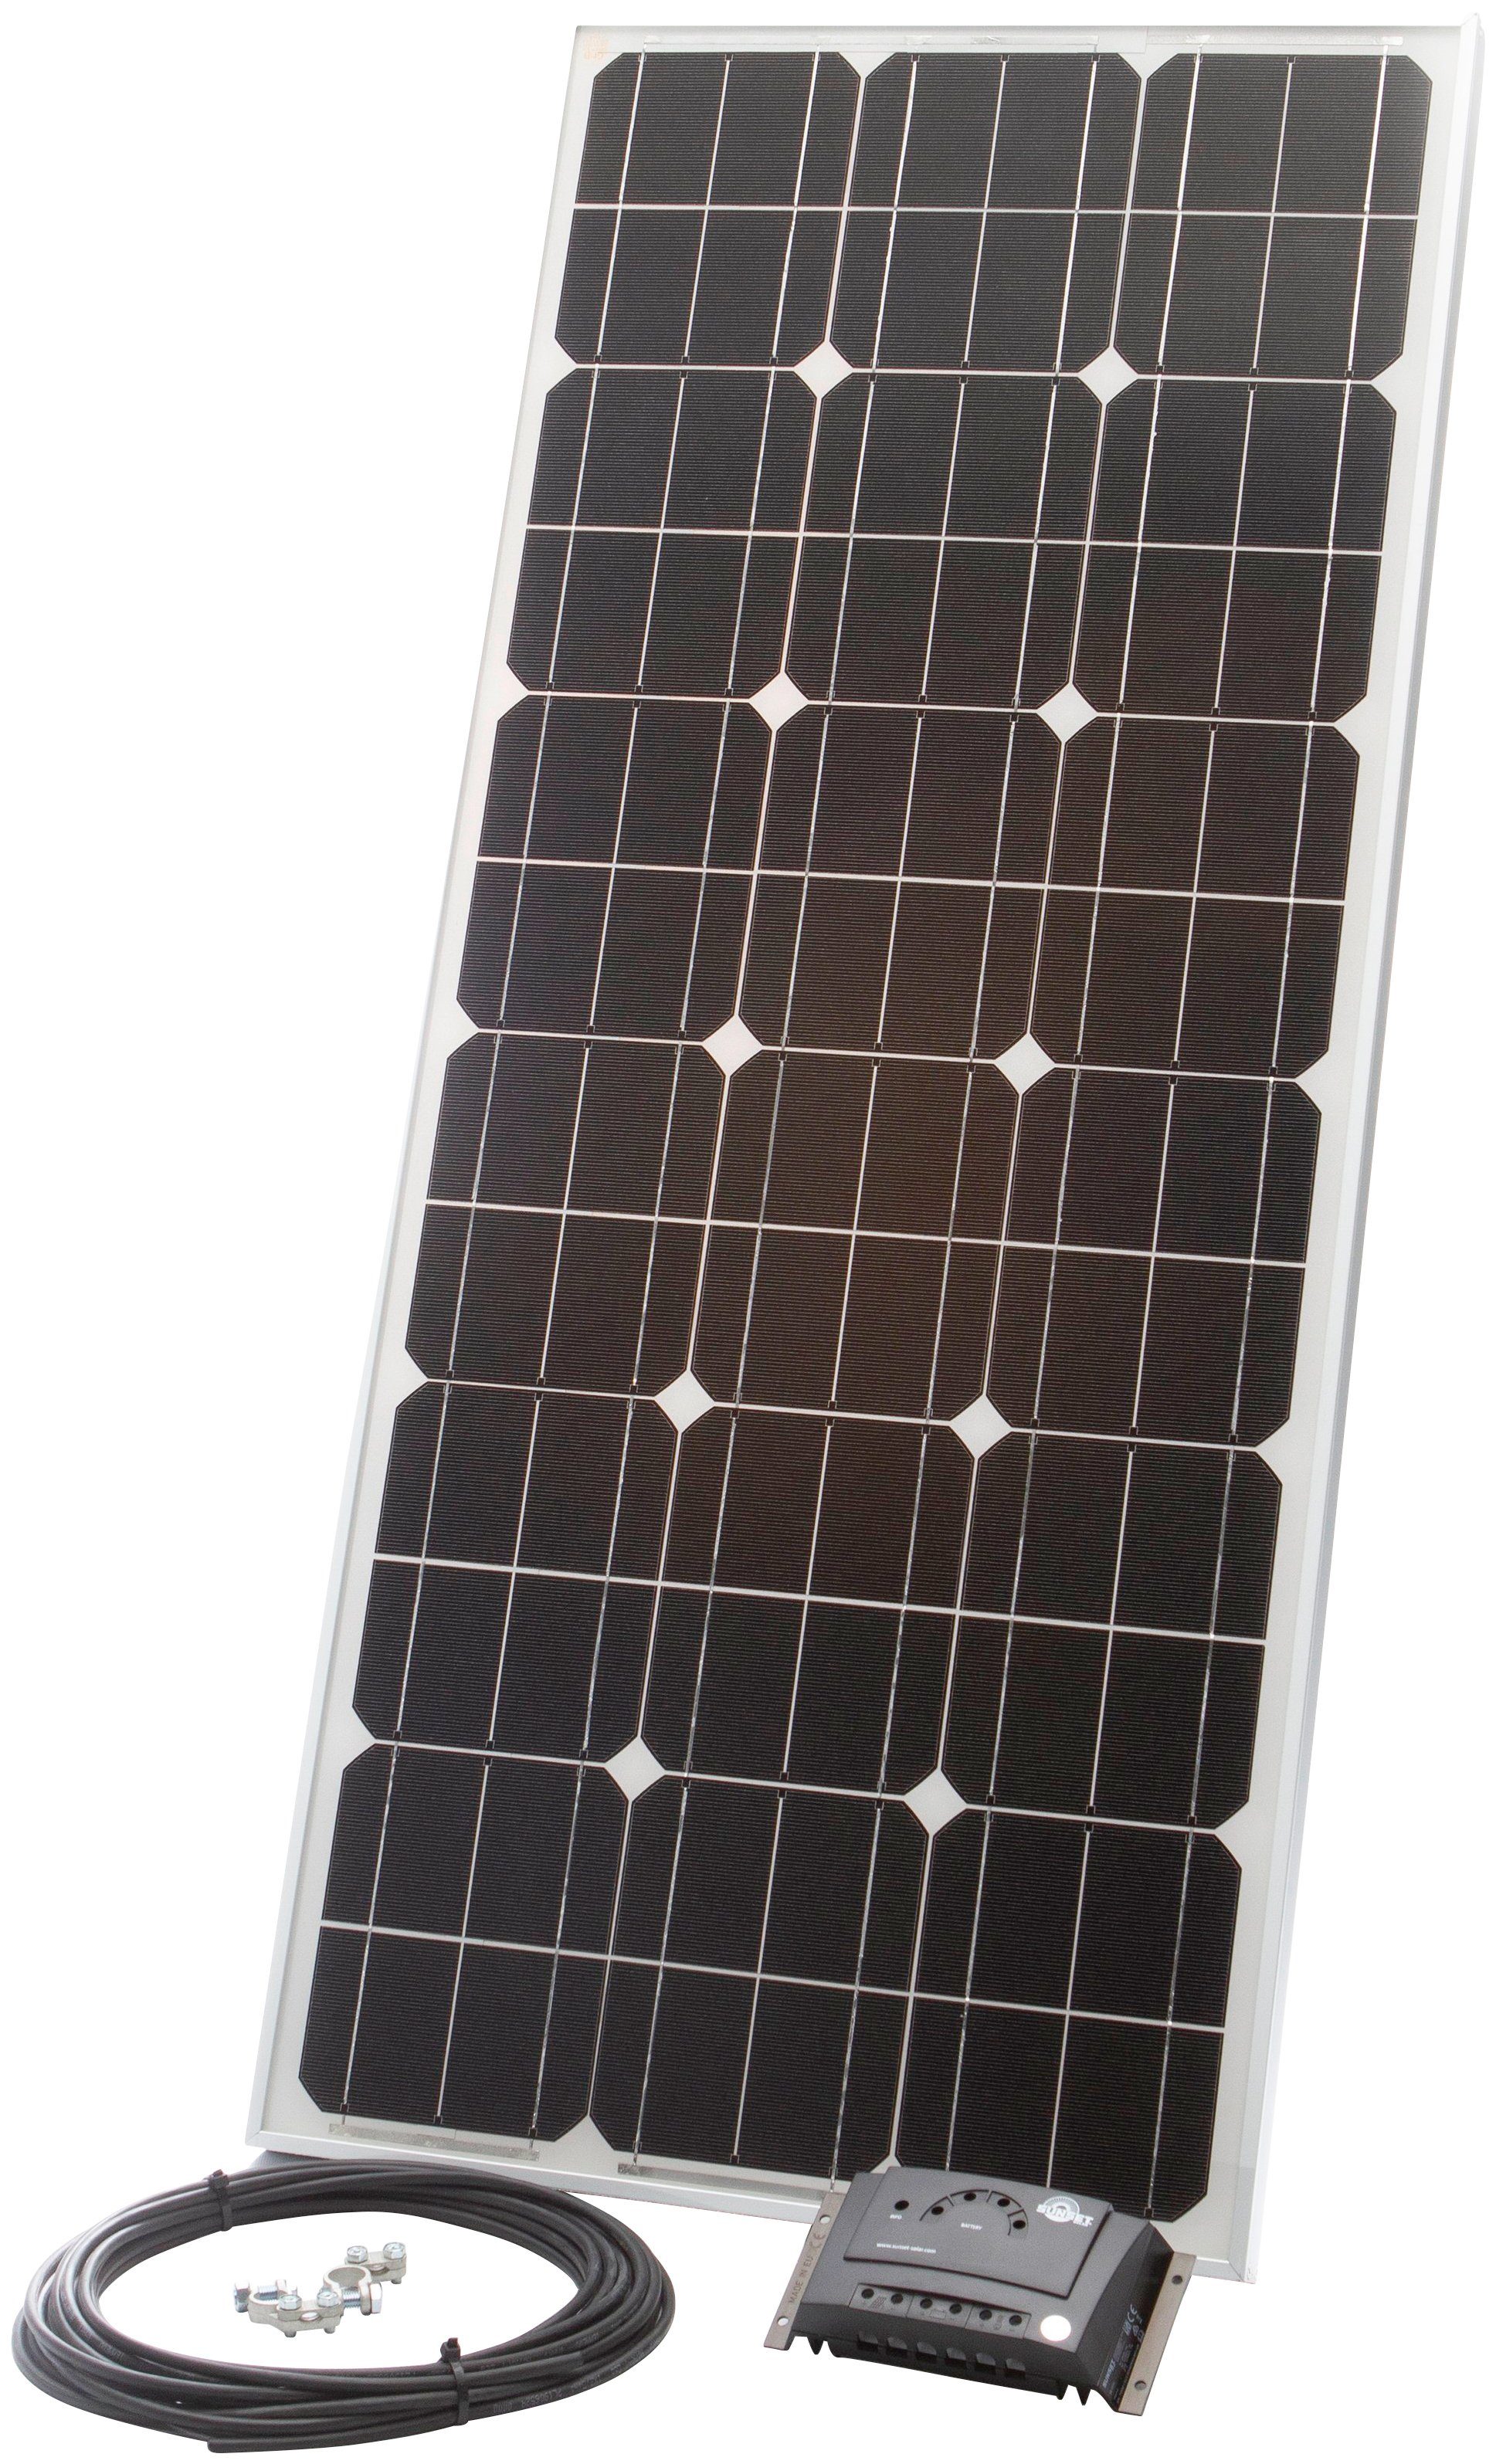 Sunset Solarmodul Stromset AS 75, 72 Watt, 12 V, 72 W, Monokristallin, für den Freizeitbereich